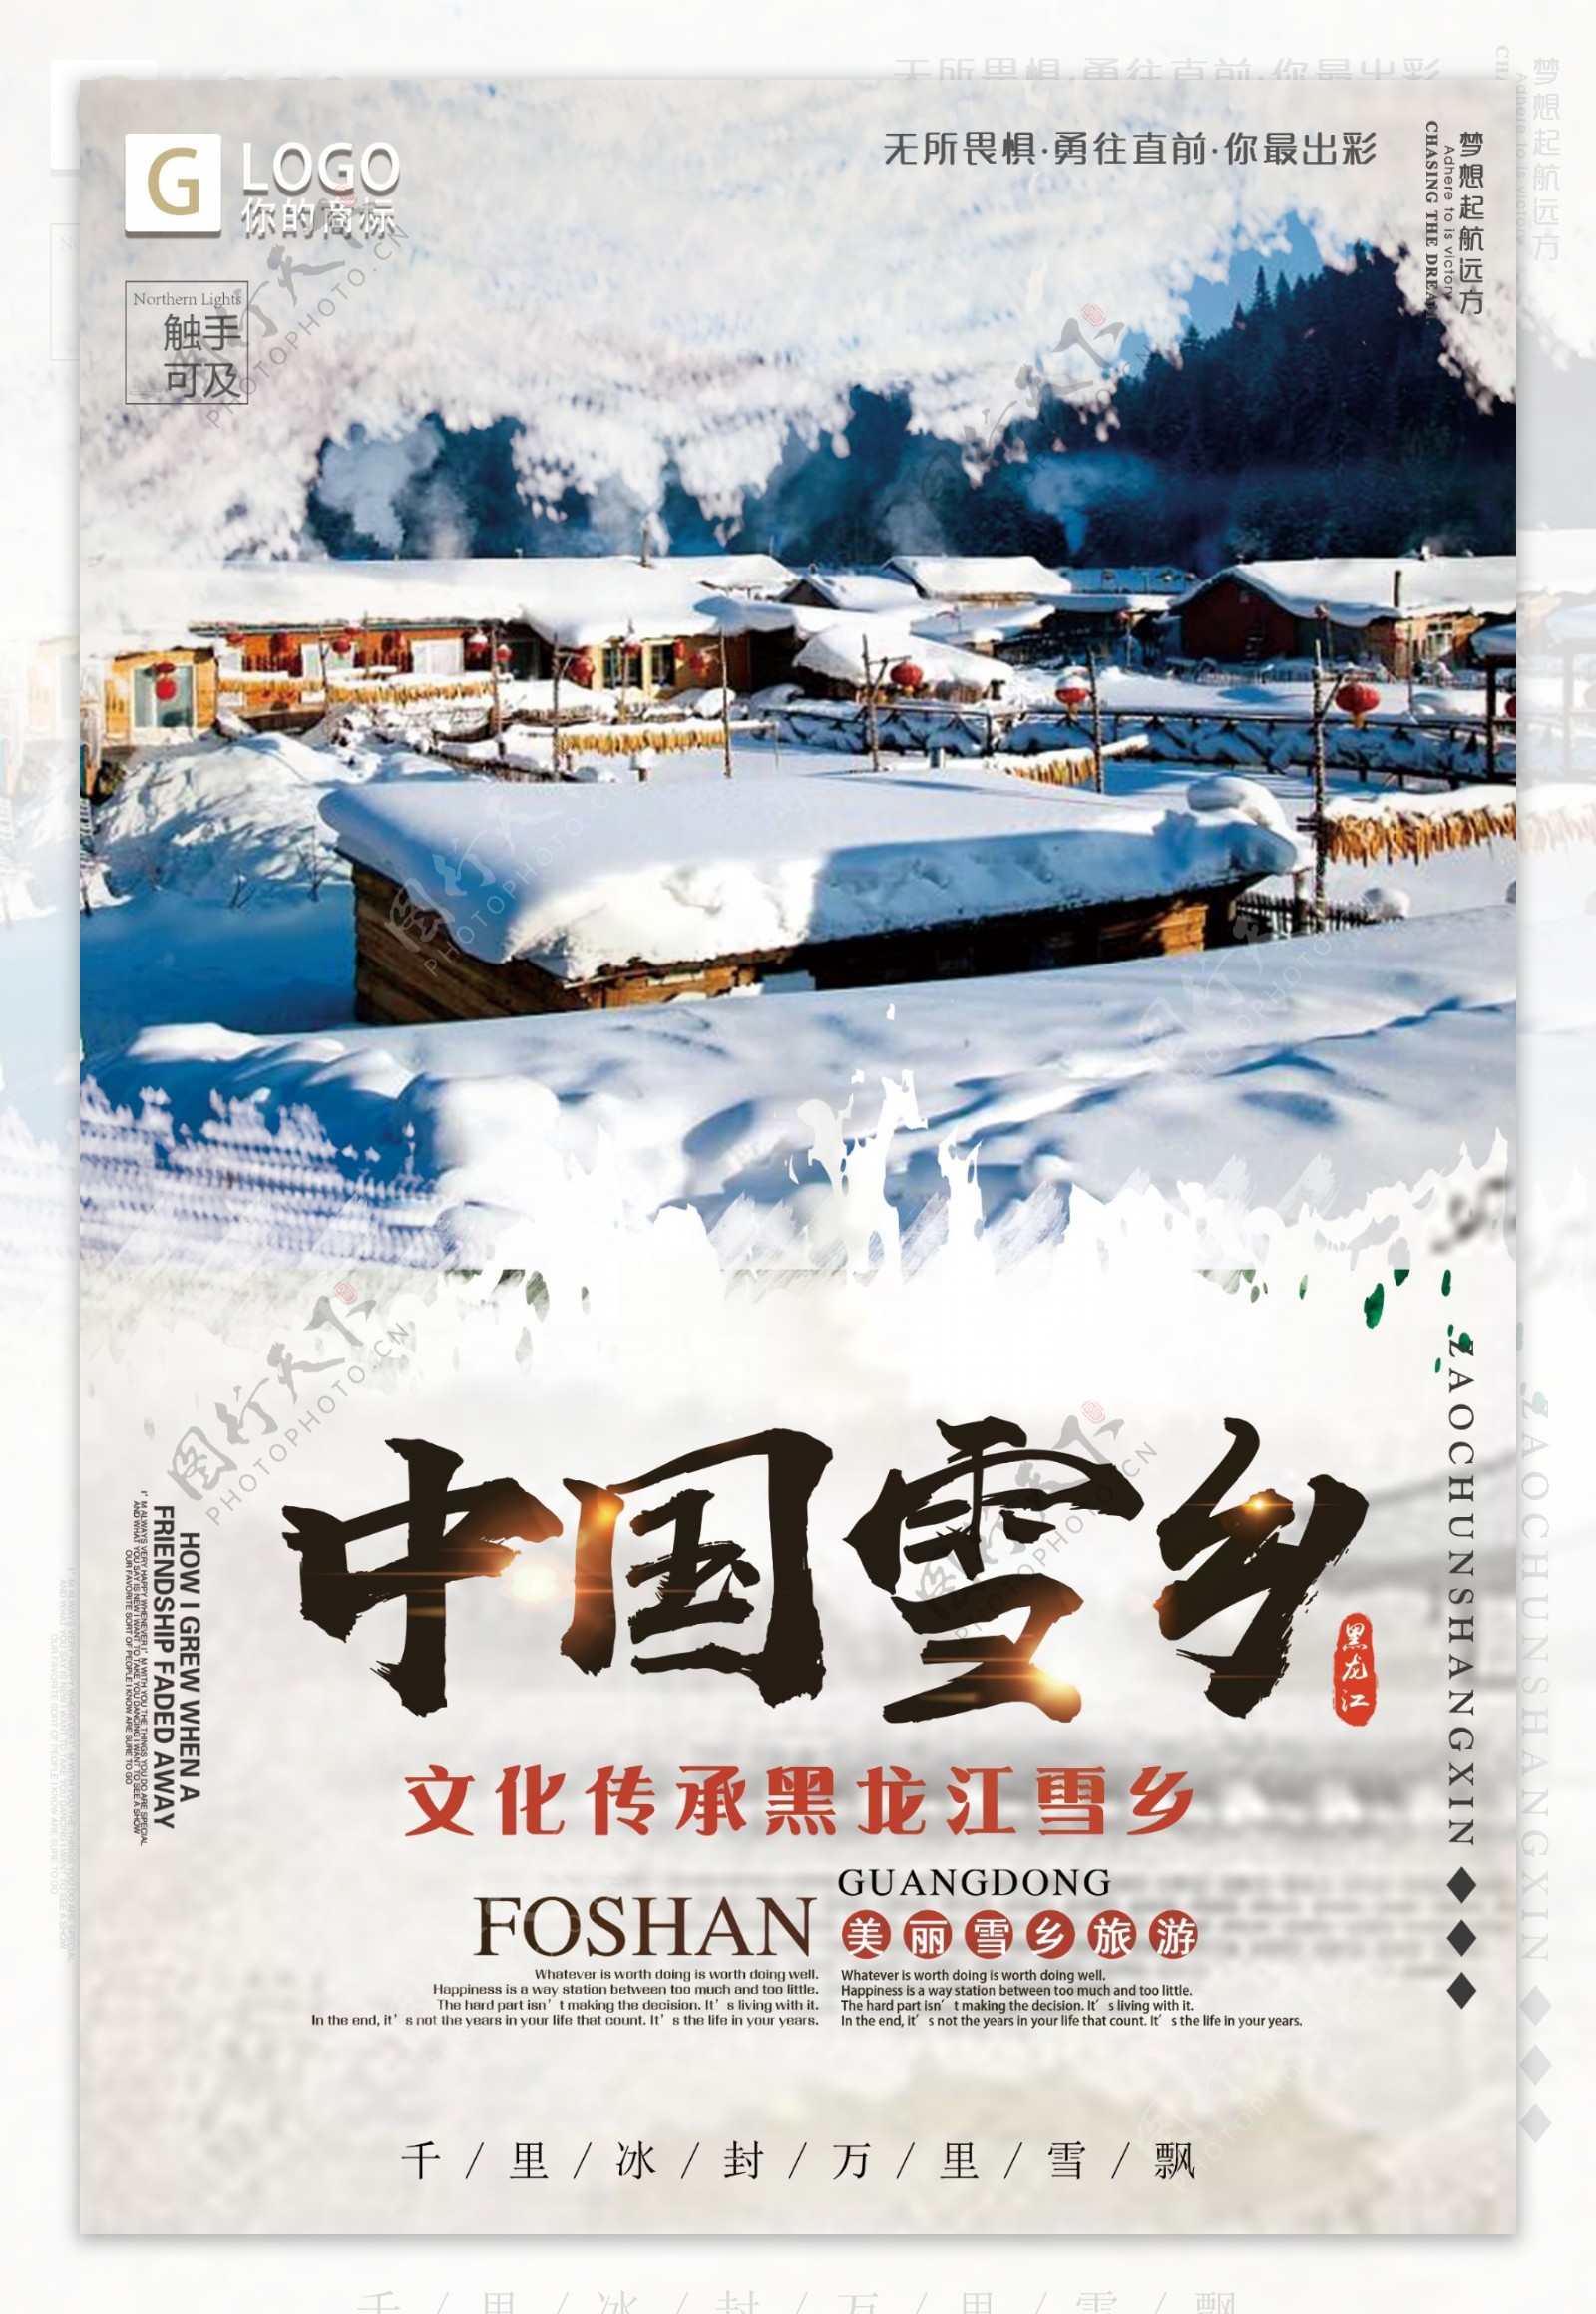 中国风时尚大气中国雪乡创意宣传海报设计